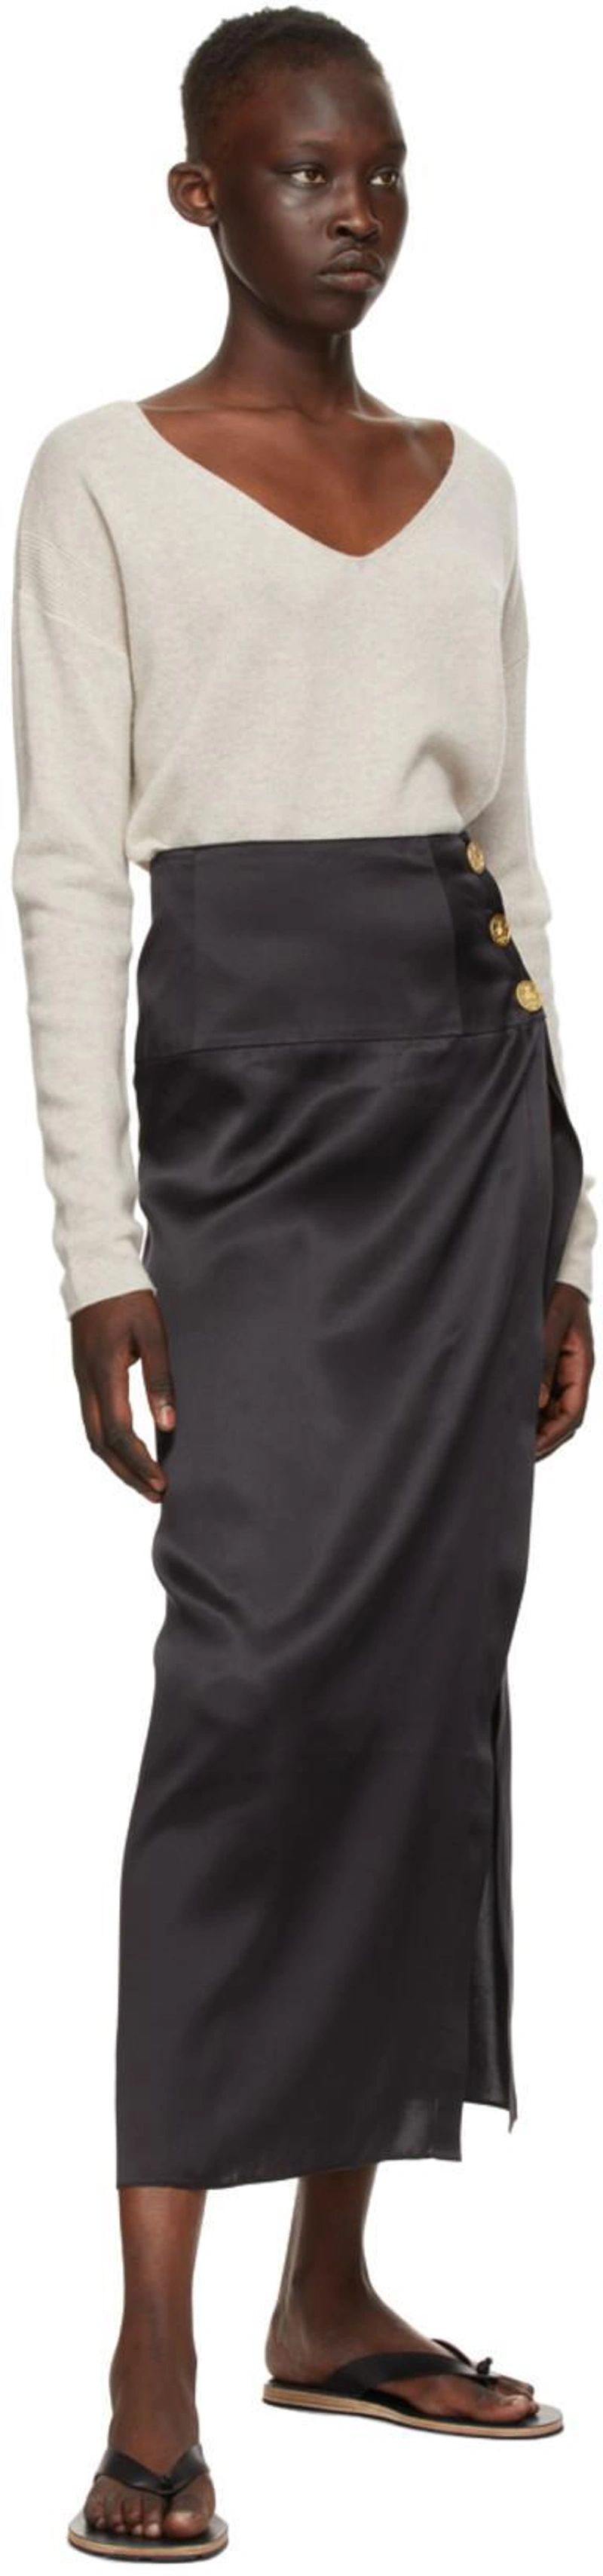 SSENSE's Post | Wearing: Le Kasha Black Silk Coin Tacheng Skirt; Le Kasha Beige Cashmere Tibet Sweater In Light Beige; Jil Sander Stud-embellished Leather Flip Flops In 001 Black